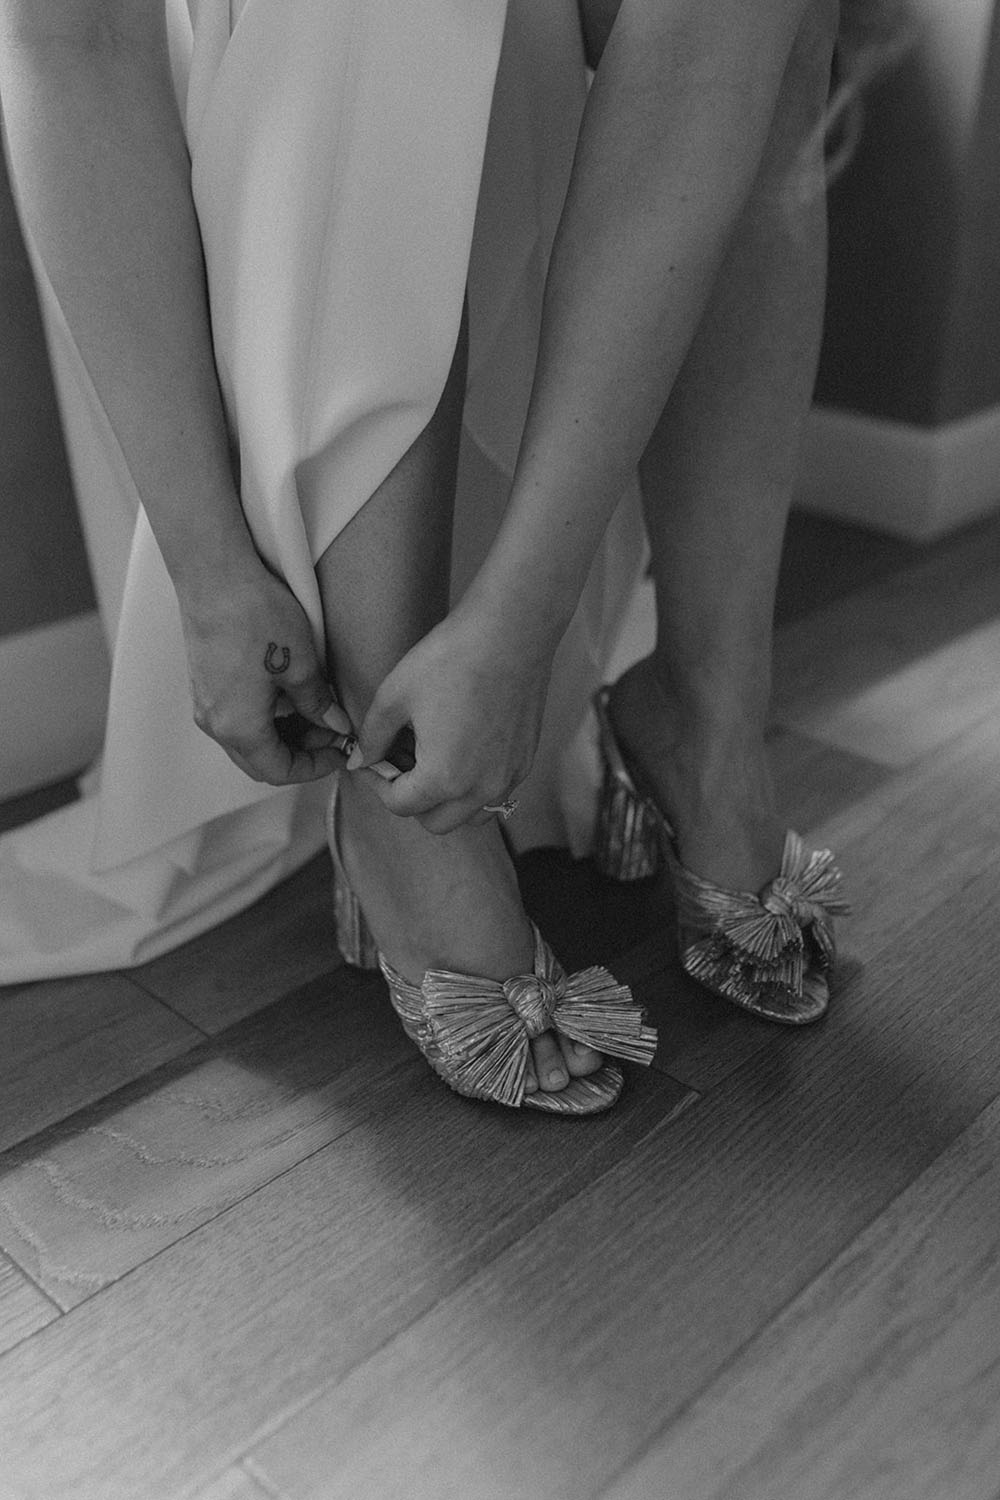 Loeffler Randall wedding heels